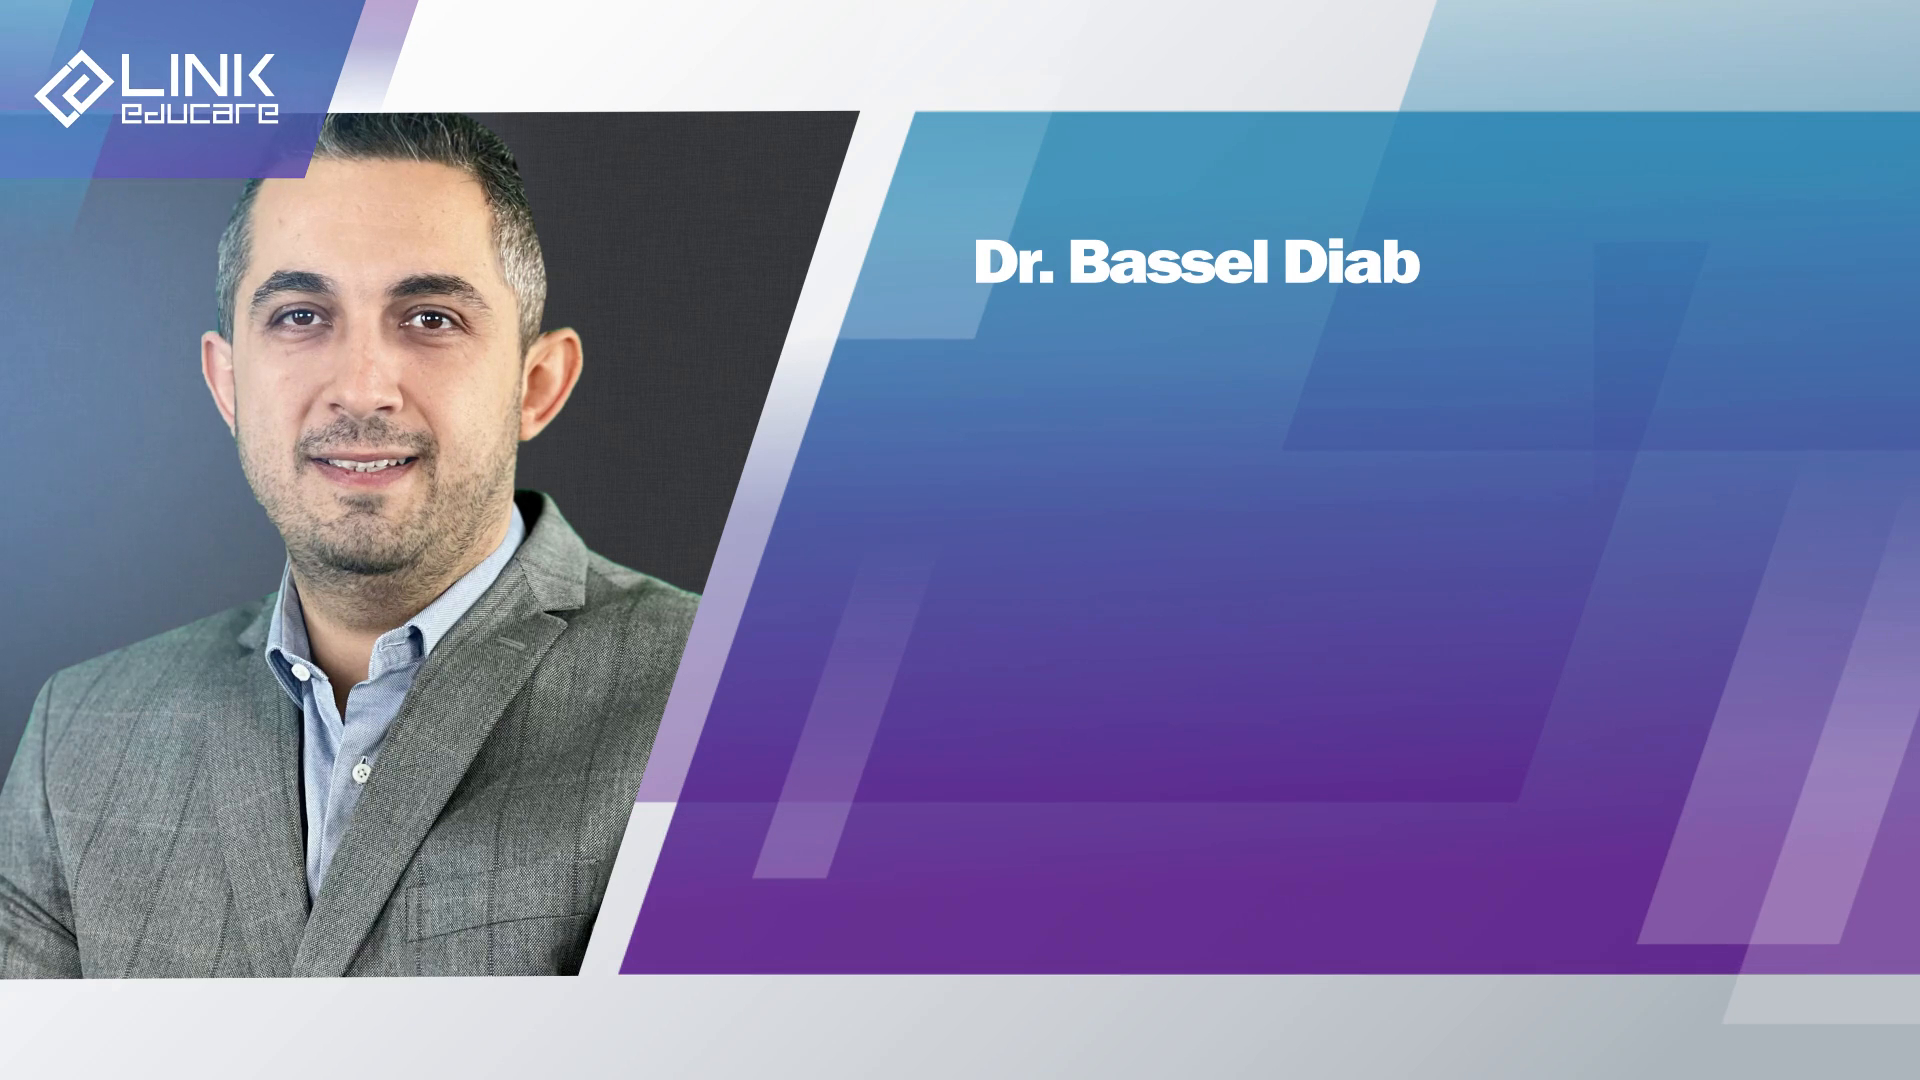 Dr. Bassel Diab